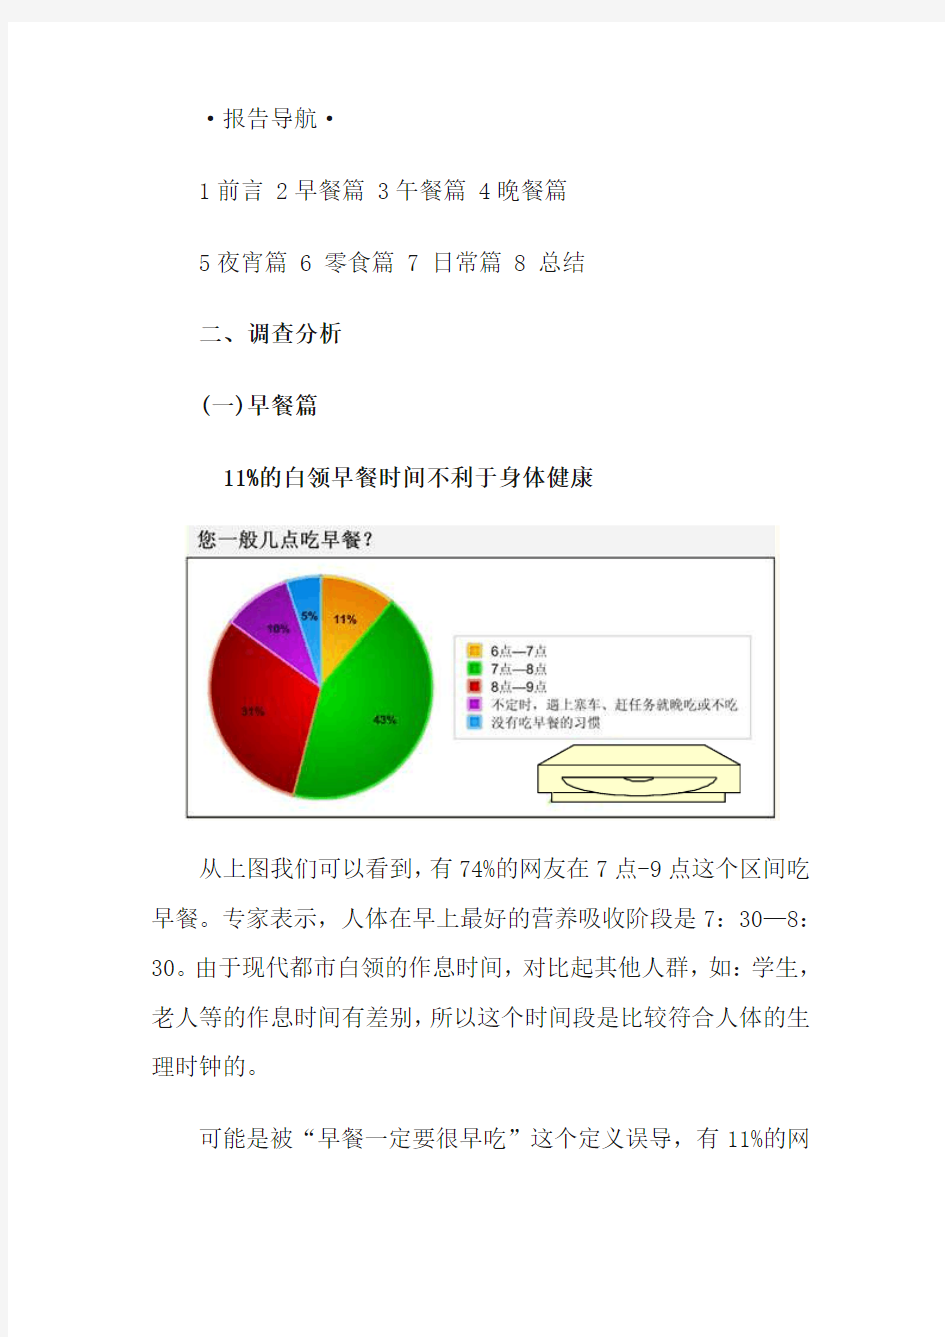 中国白领饮食习惯调查报告